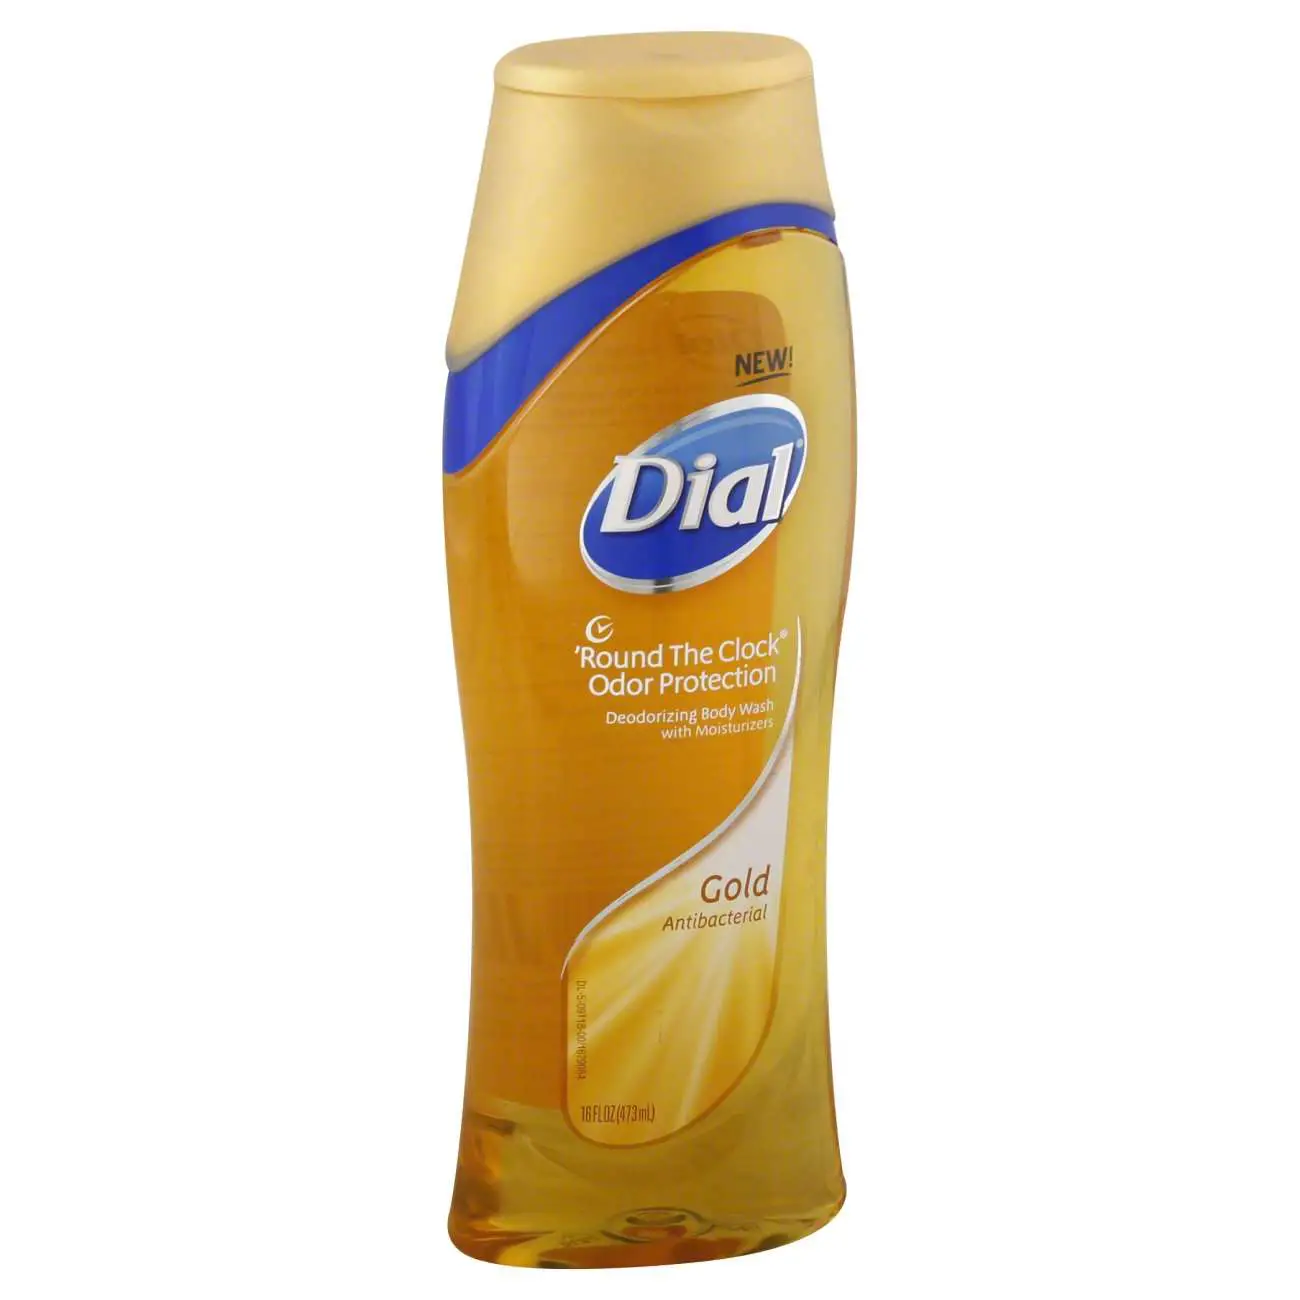 Dial Gold Antibacterial Deodorizing Body Wash